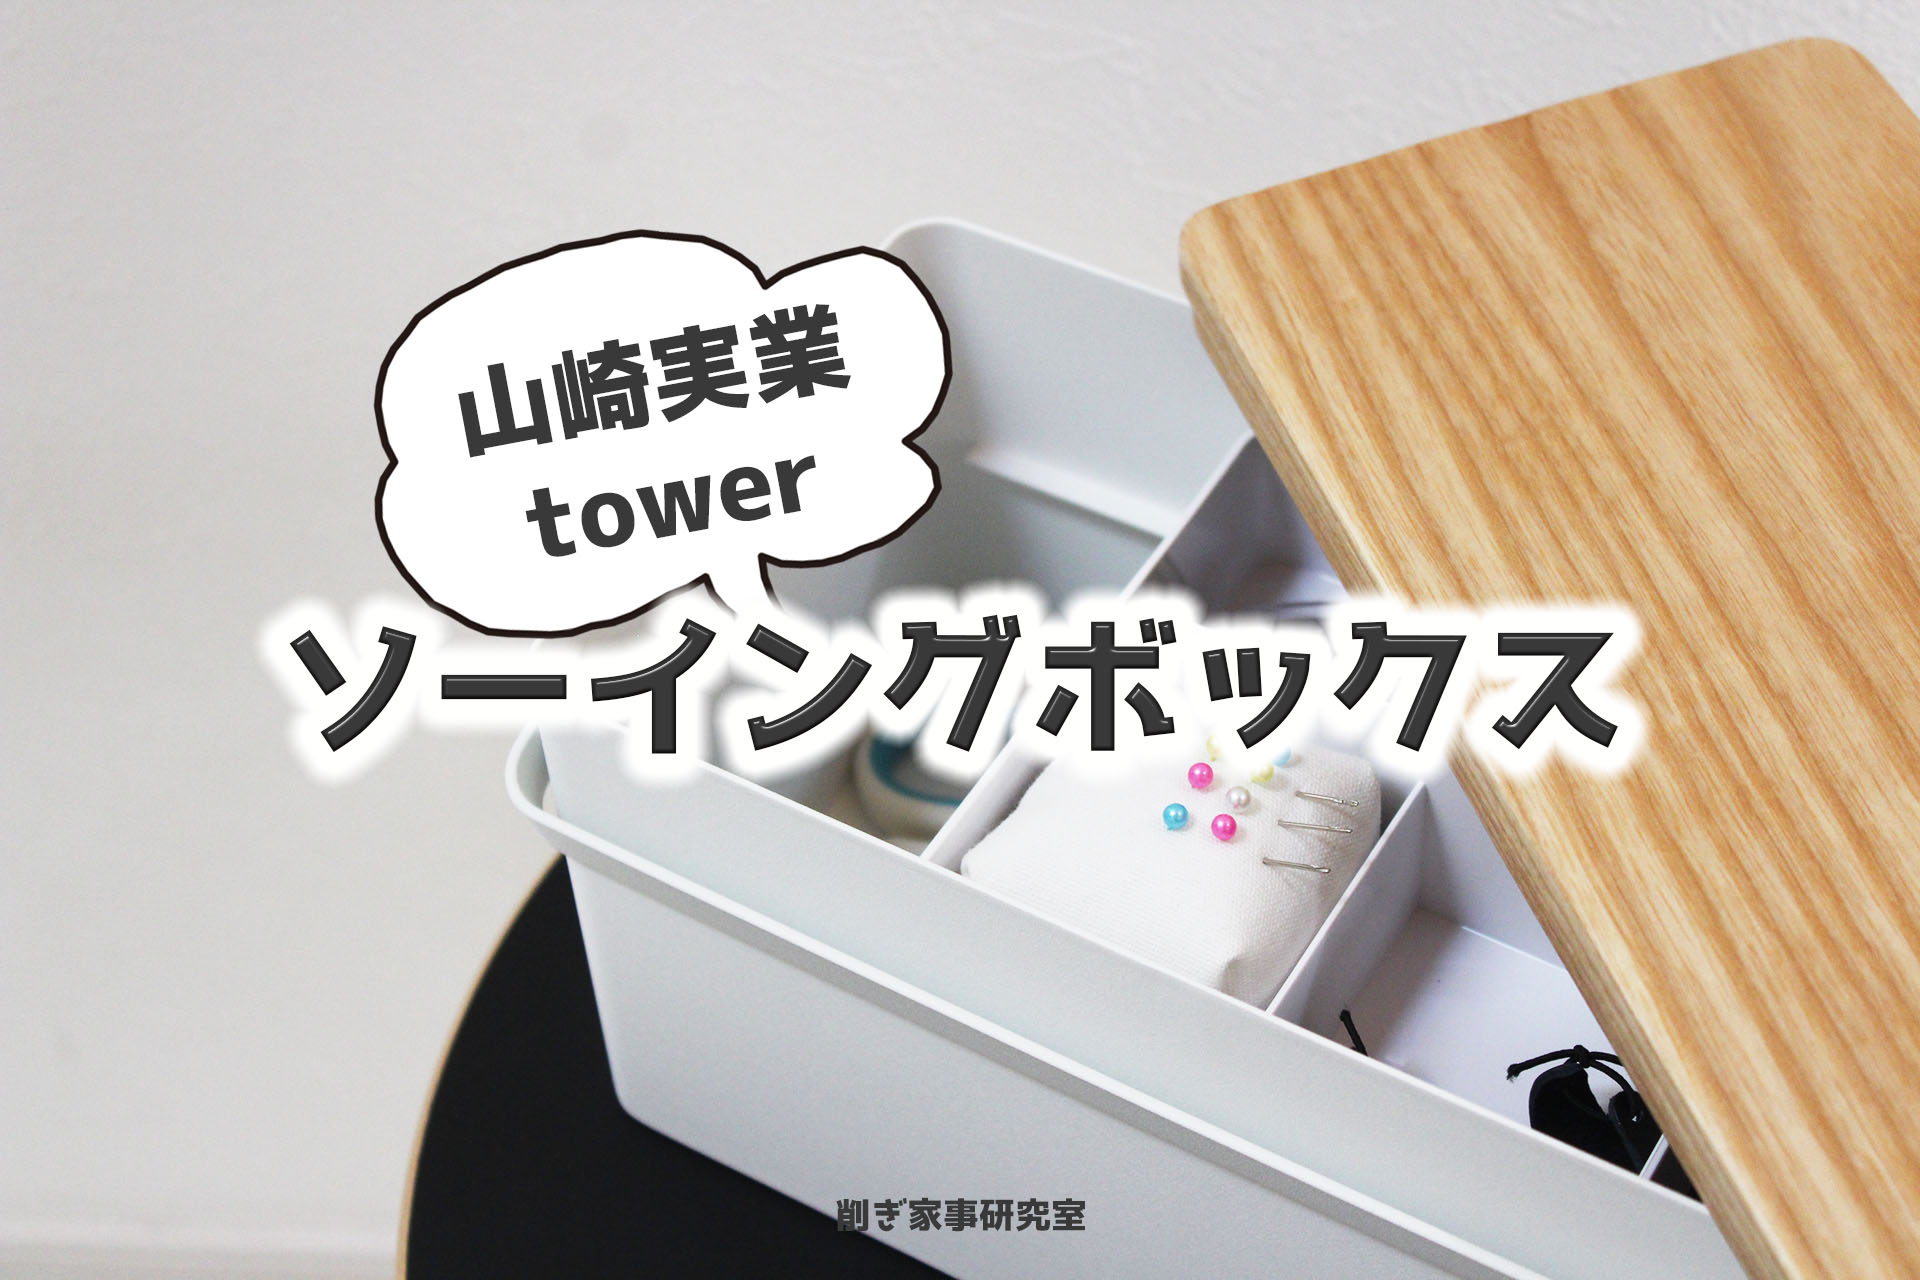 オシャレすぎ山崎実業【tower】のソーイングボックス